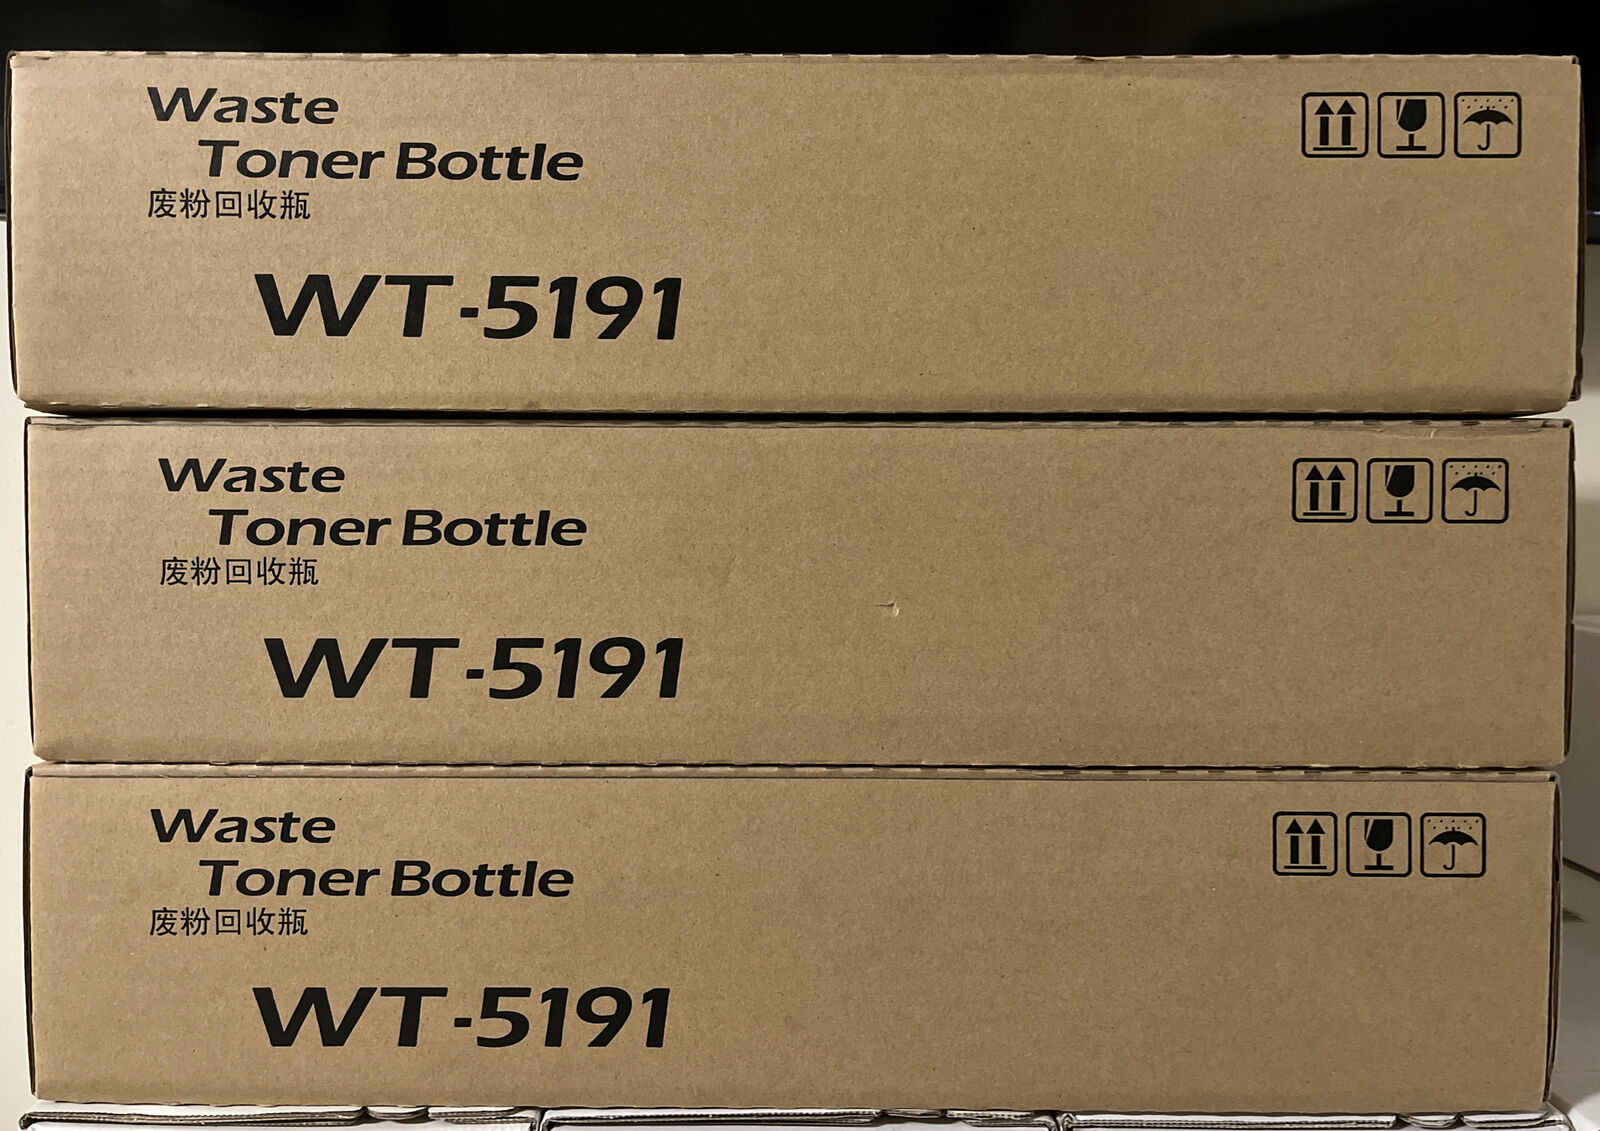 OEM Kyocera Waste Toner Bottle WT-5191 ***Lot of 3***